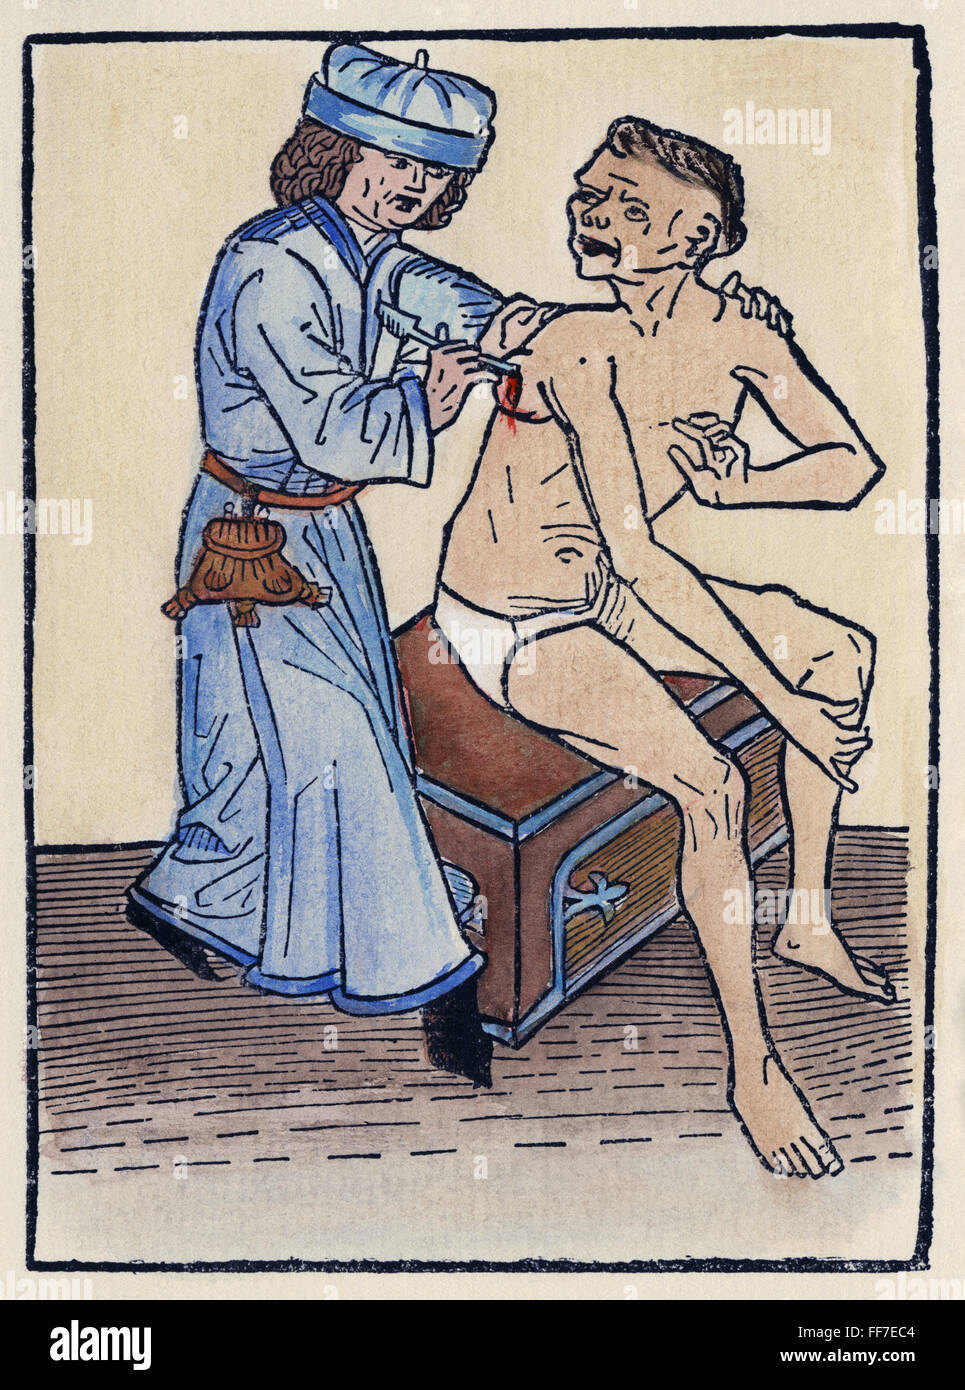 PEST ARZT, 1482. NUM Arzt Stechhilfe eine Pest verursacht Bubo, die wahrscheinlich die Wahrscheinlichkeit erhöht der Verbreitung der Seuche. Deutsche Holzschnitt, 1482. Stockfoto